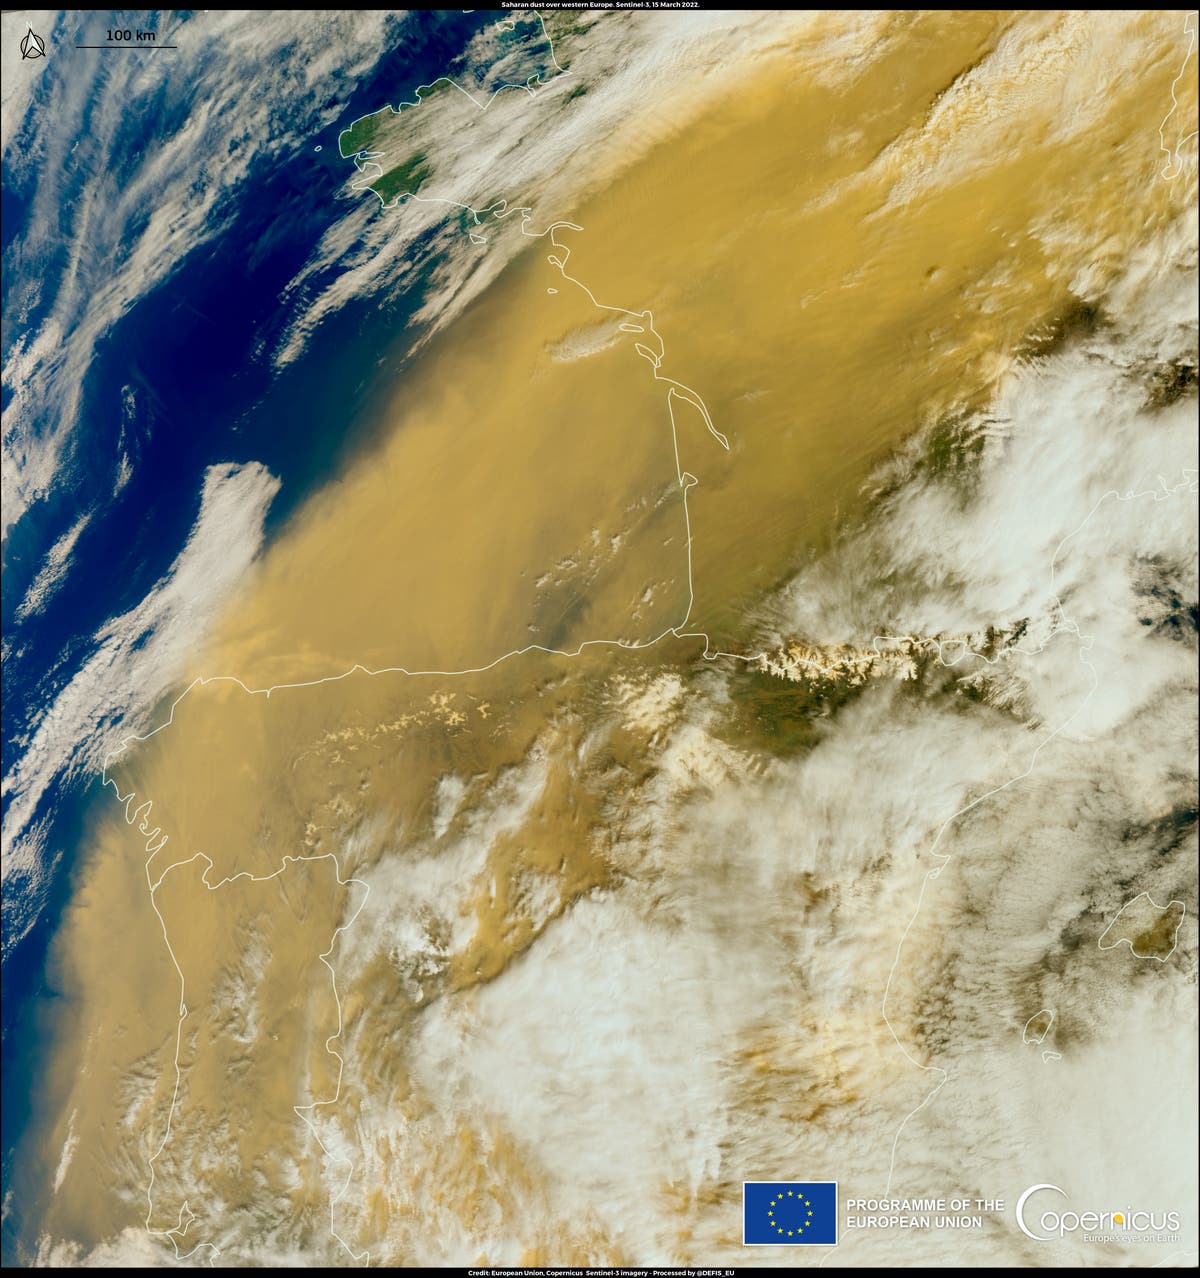 Imágenes muestran enorme nube de polvo del Sahara cubriendo Europa occidental | Independent Español